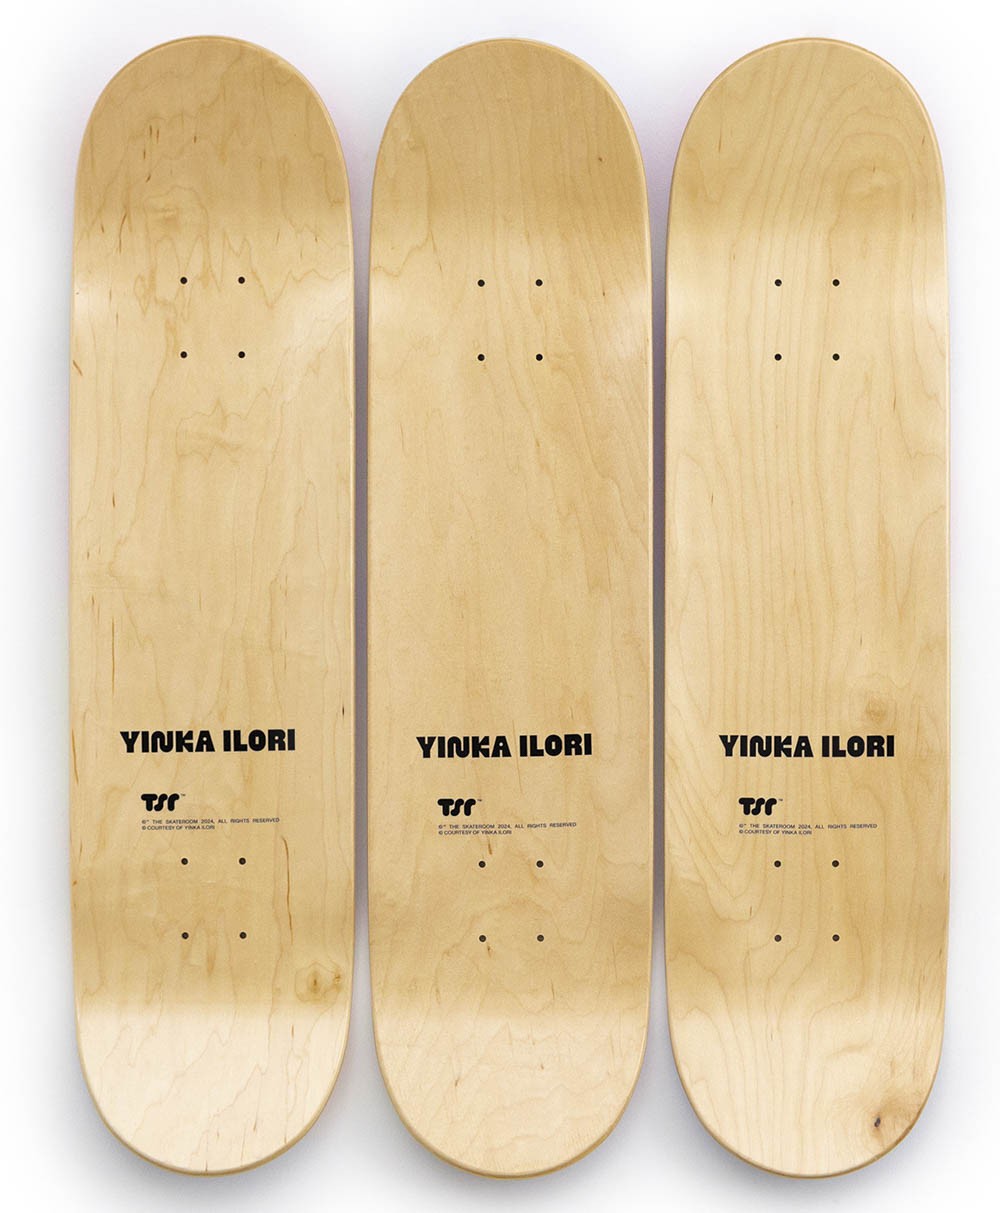 Dieses Produktbild zeigt das Skateboard Kunstobjekt x Yinka Ilori Loving you is easy (Set) von The Skateroom im RAUM concept store.